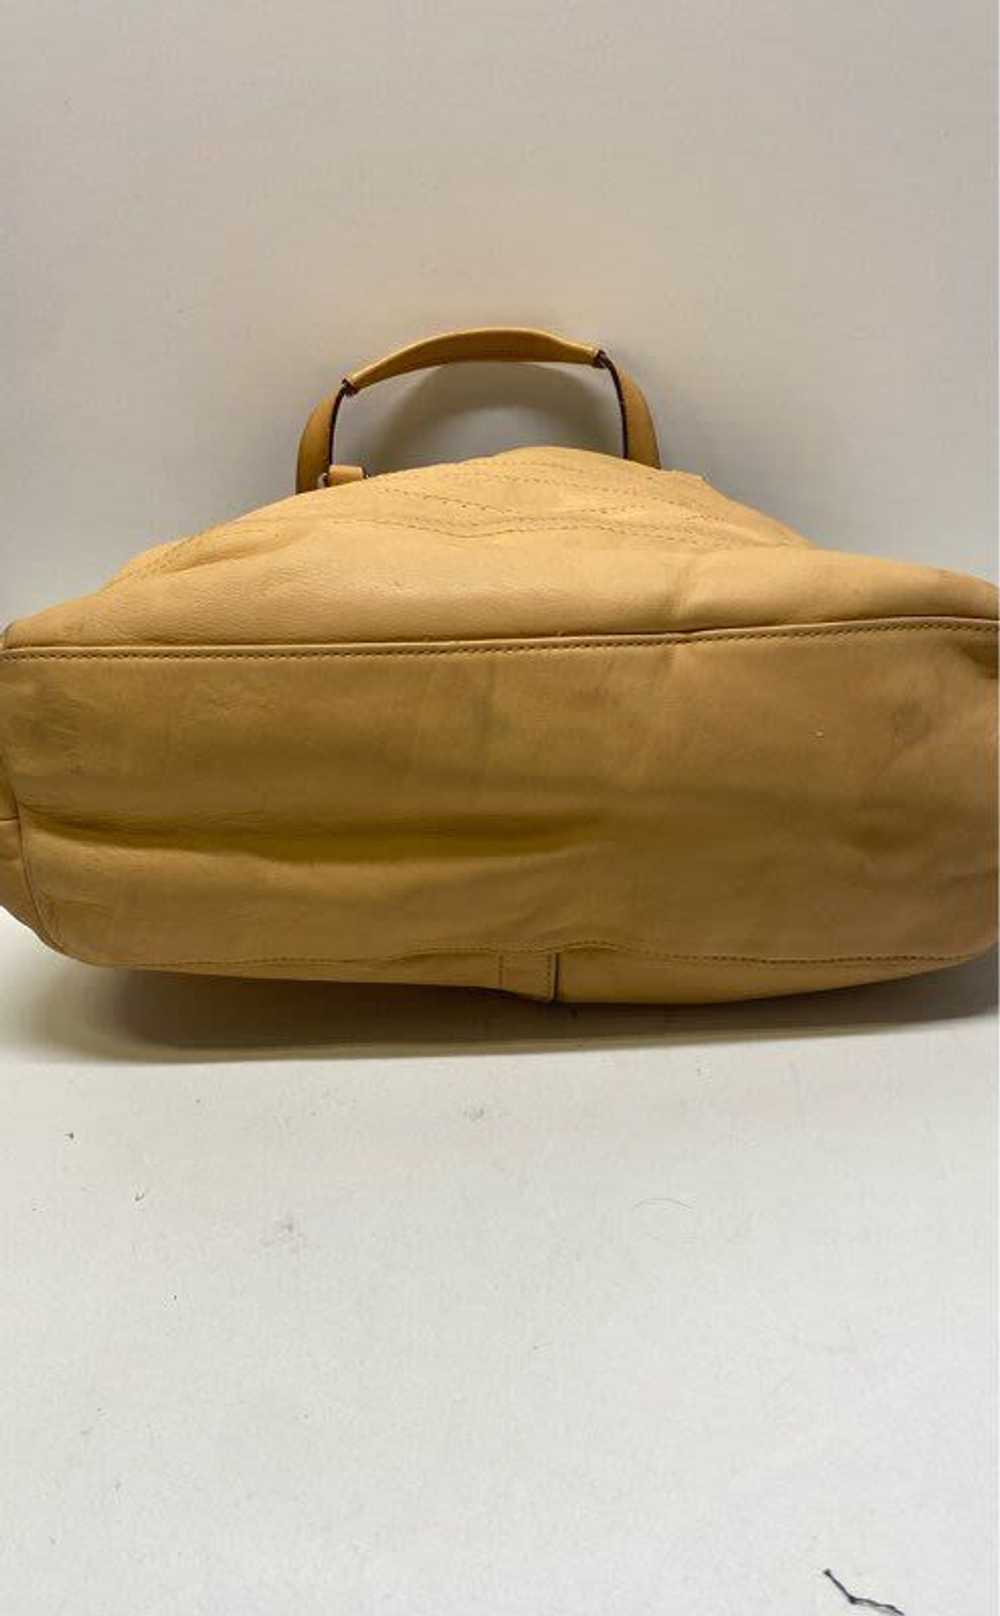 Coach Leather Shoulder Bag Tan - image 3